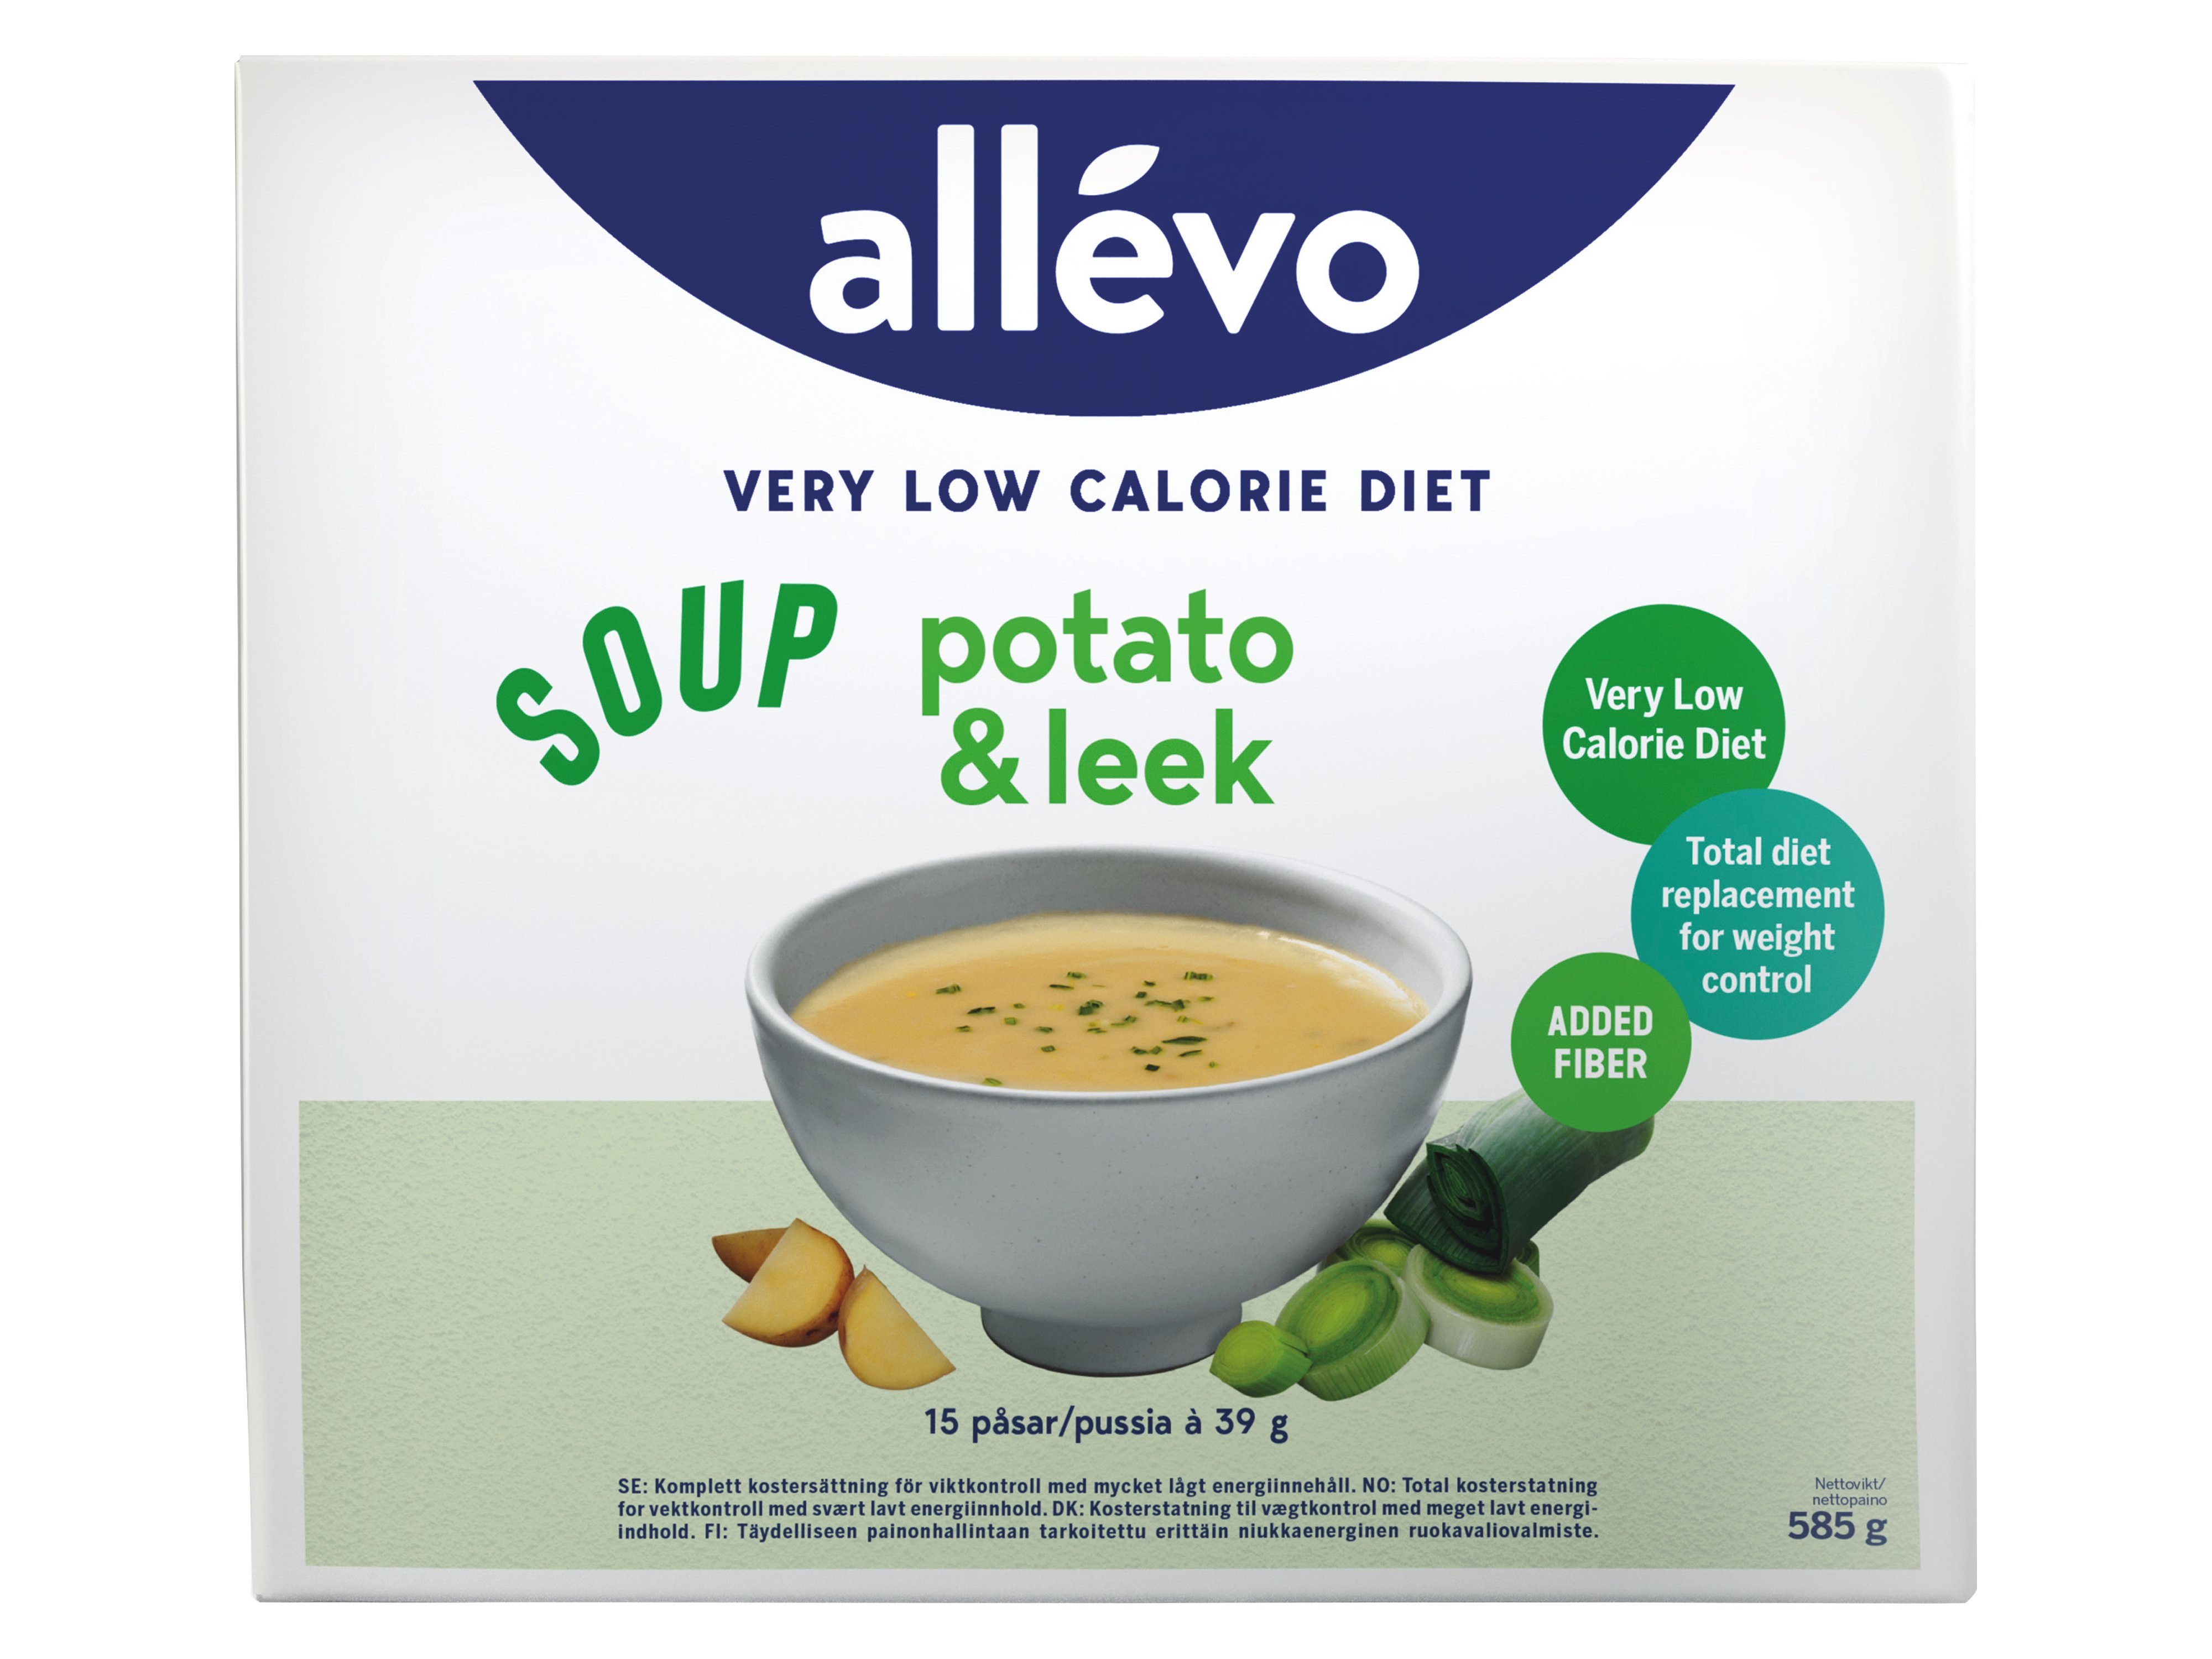 Allevo VLCD Soup Potato & Leek, 15 x 39 g